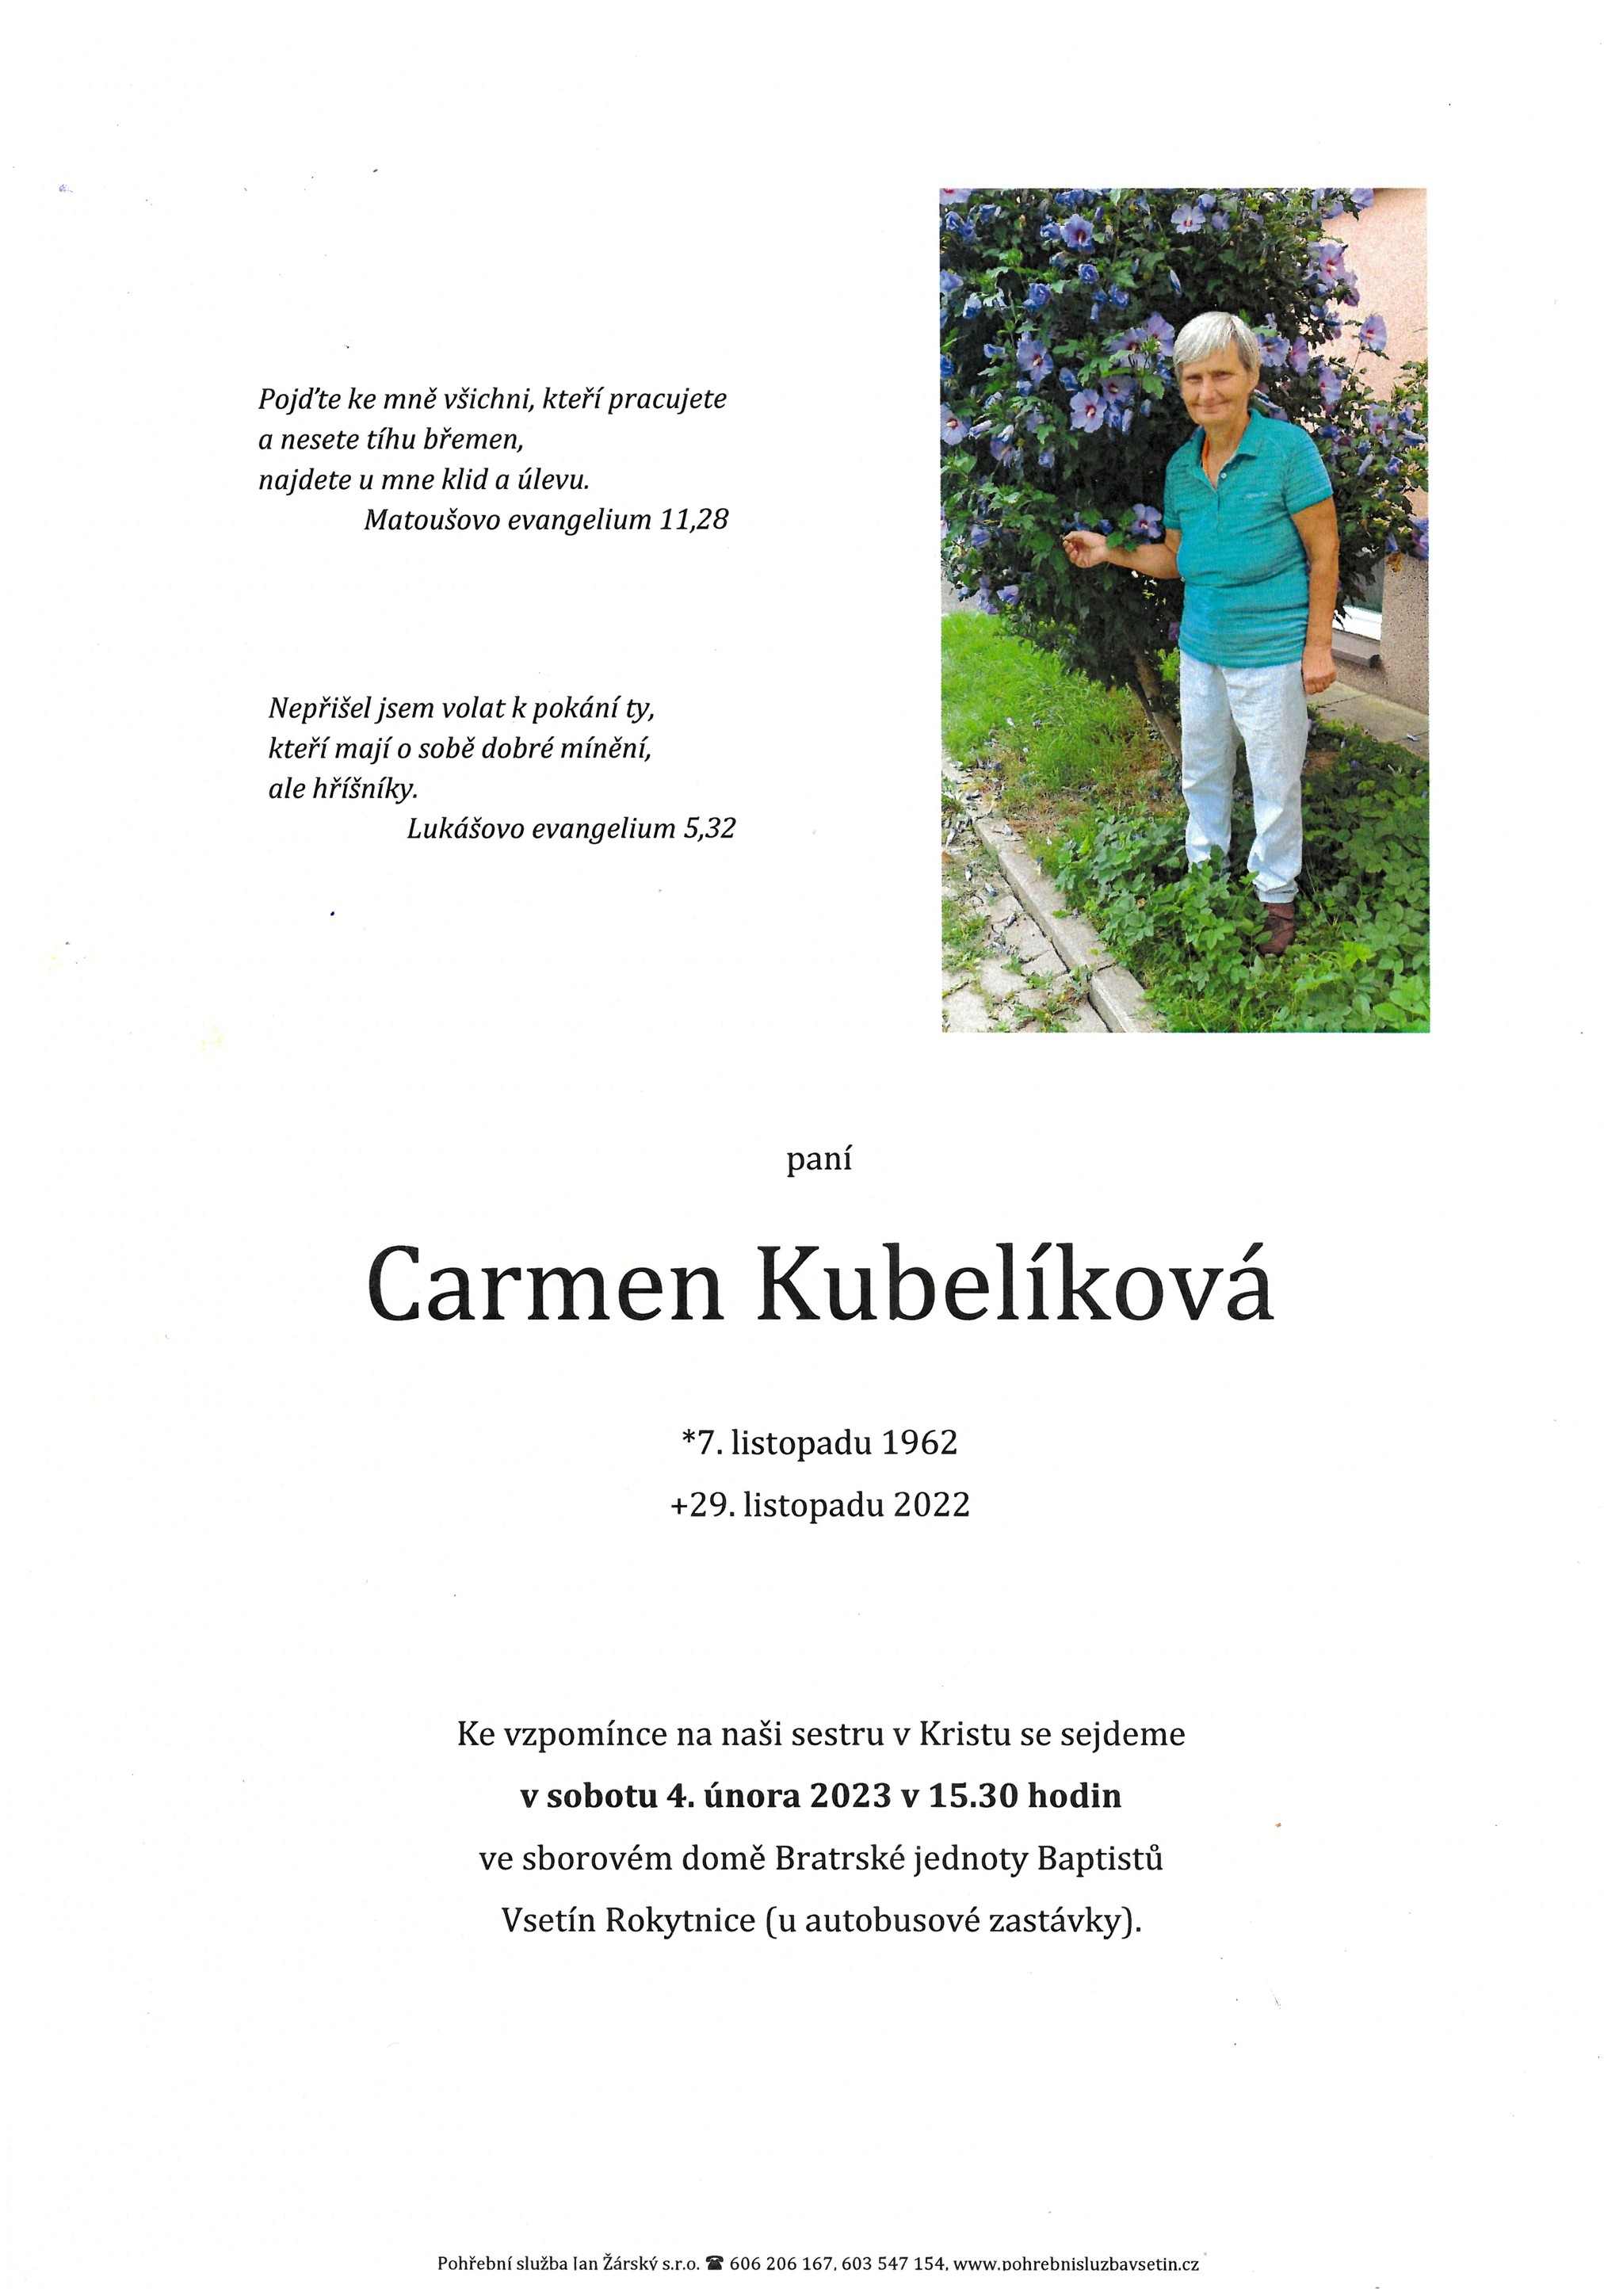 Carmen Kubelíková